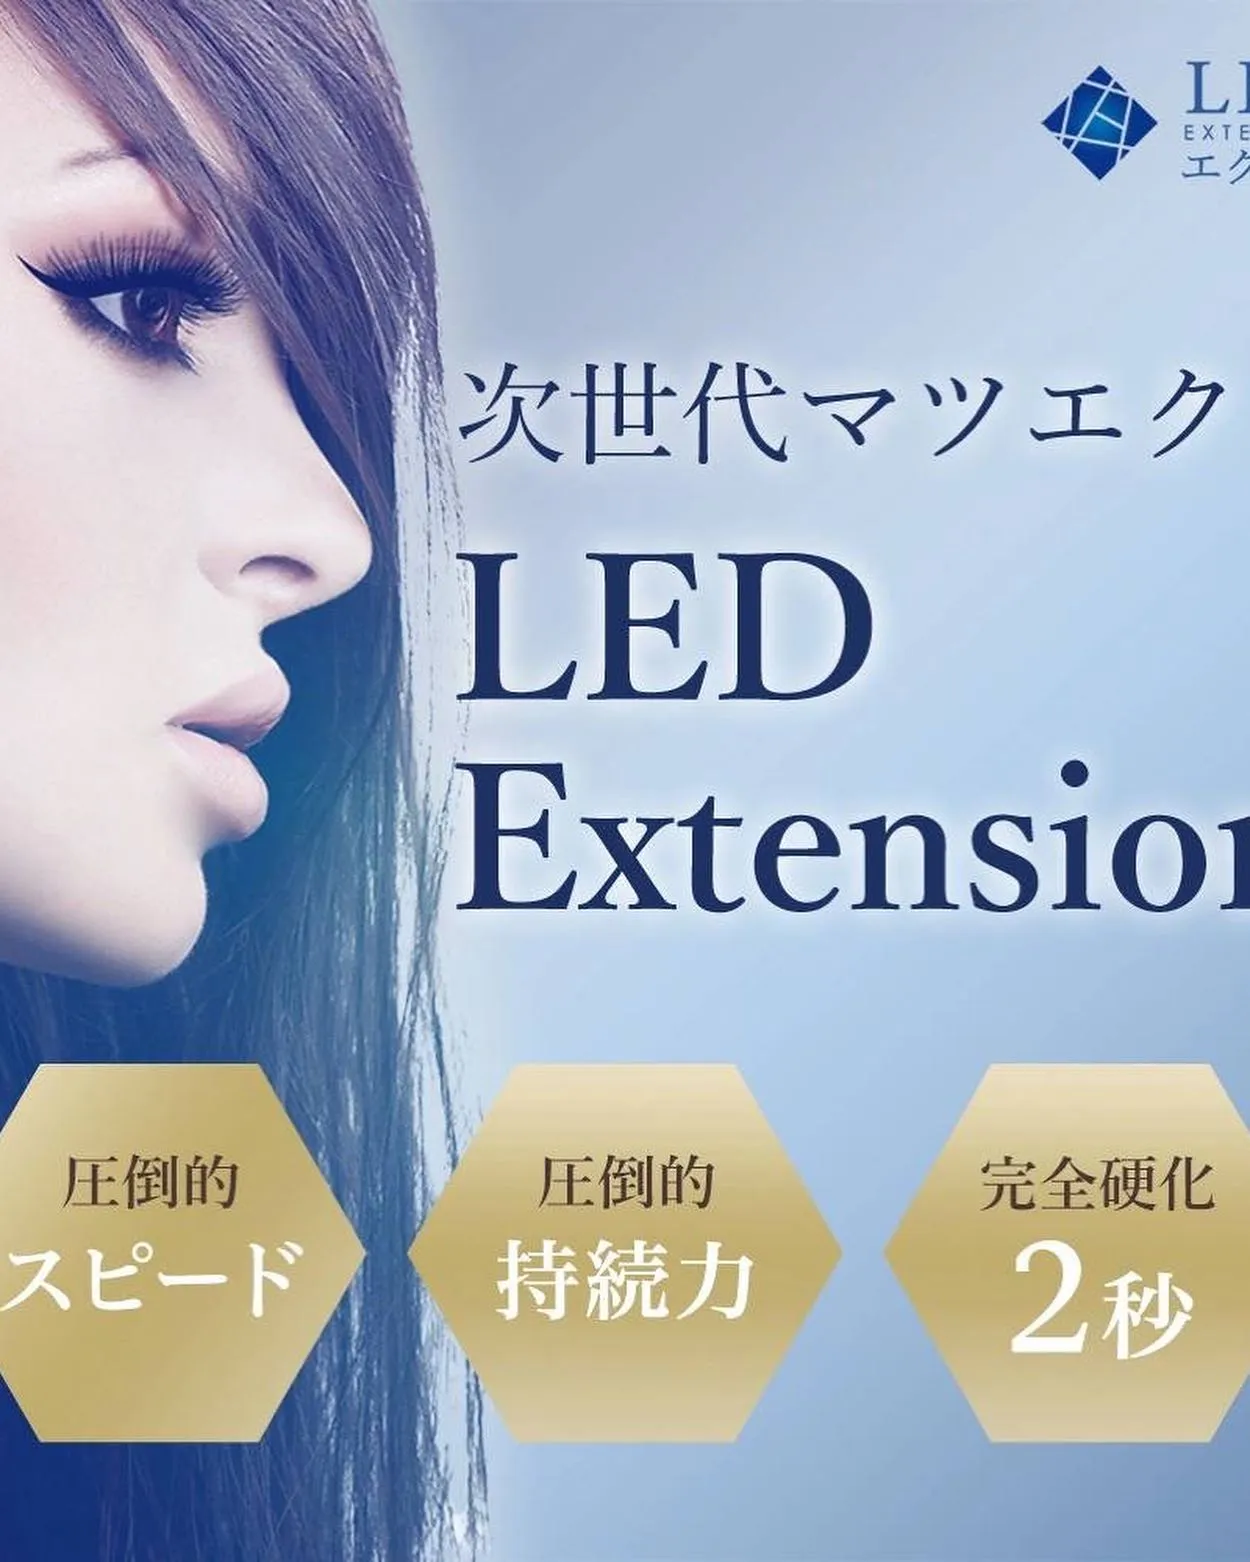 次世代まつ毛エクステ圧倒的持続力LEDエクステ導入しました|横浜菊名